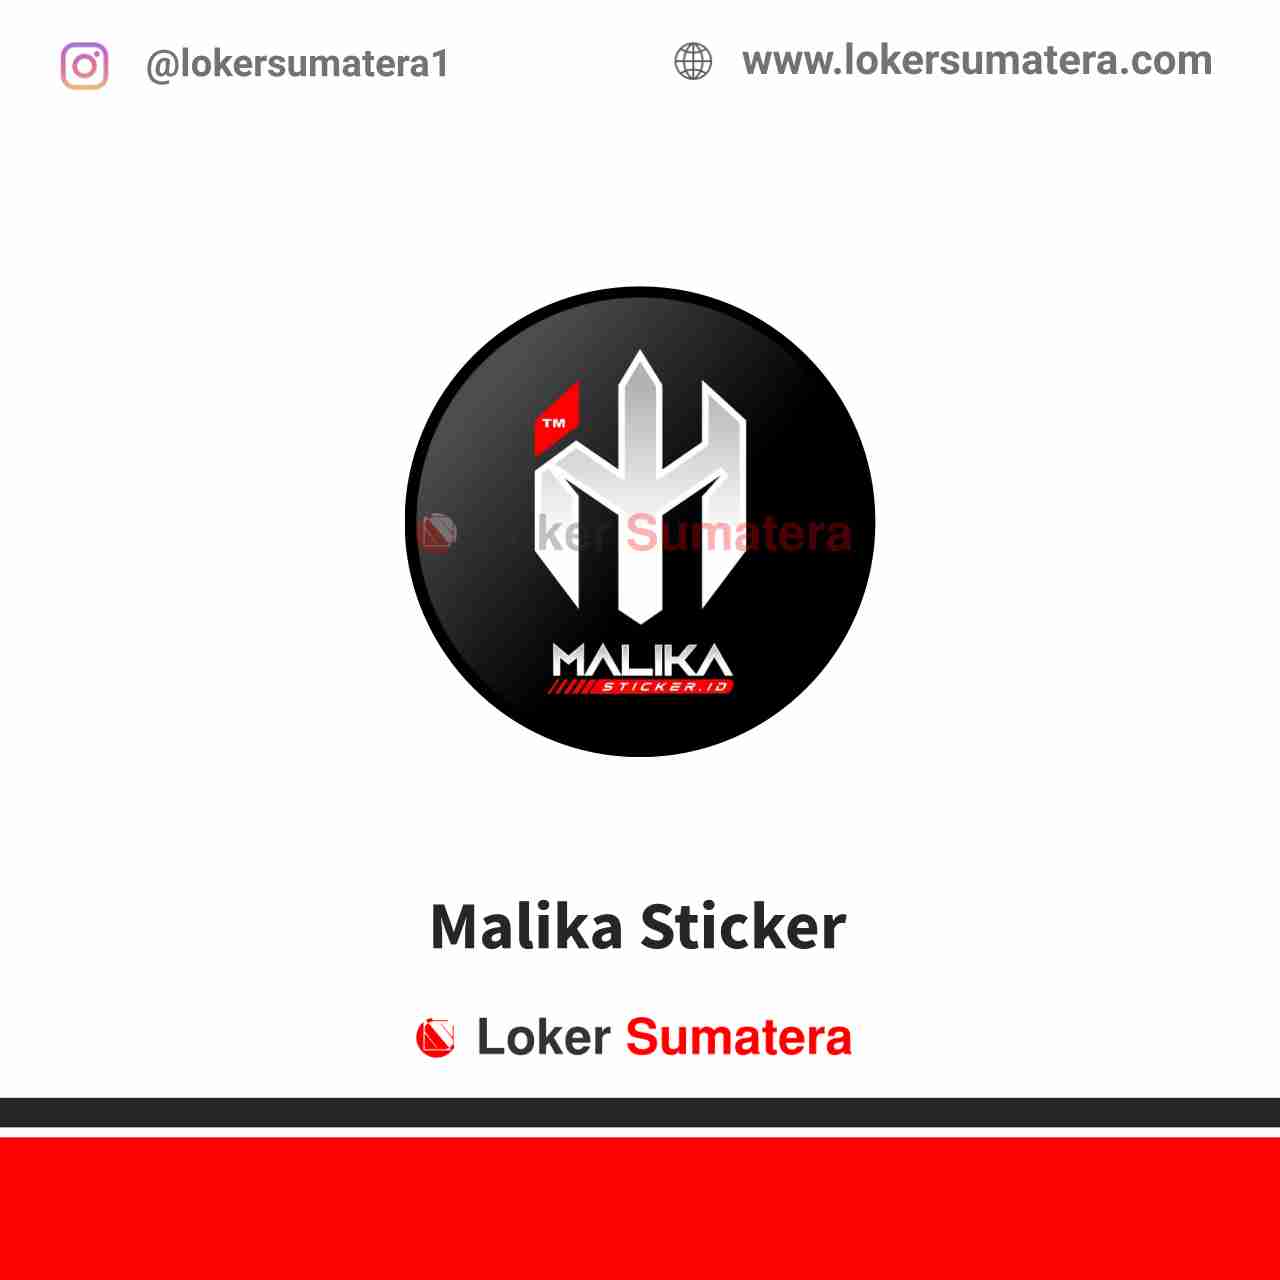 Malika Sticker Pekanbaru